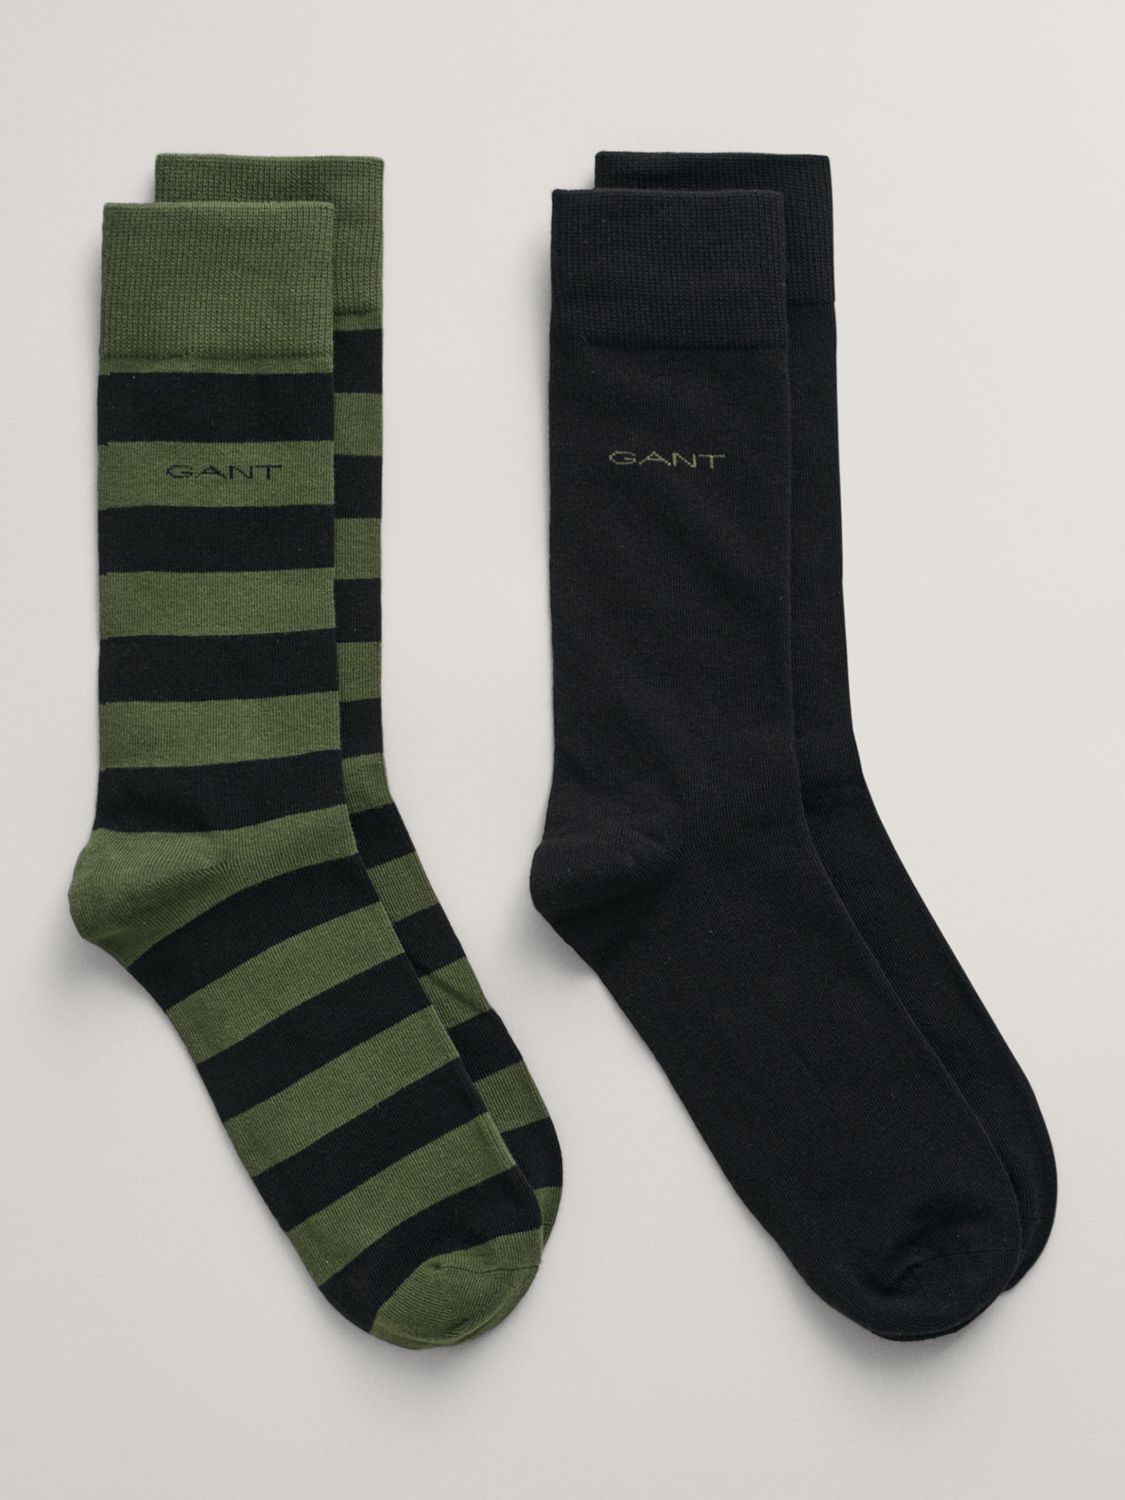 GANT Plain and Stripe Ankle Socks, Pack of 2, Pine Green/Black, S-M